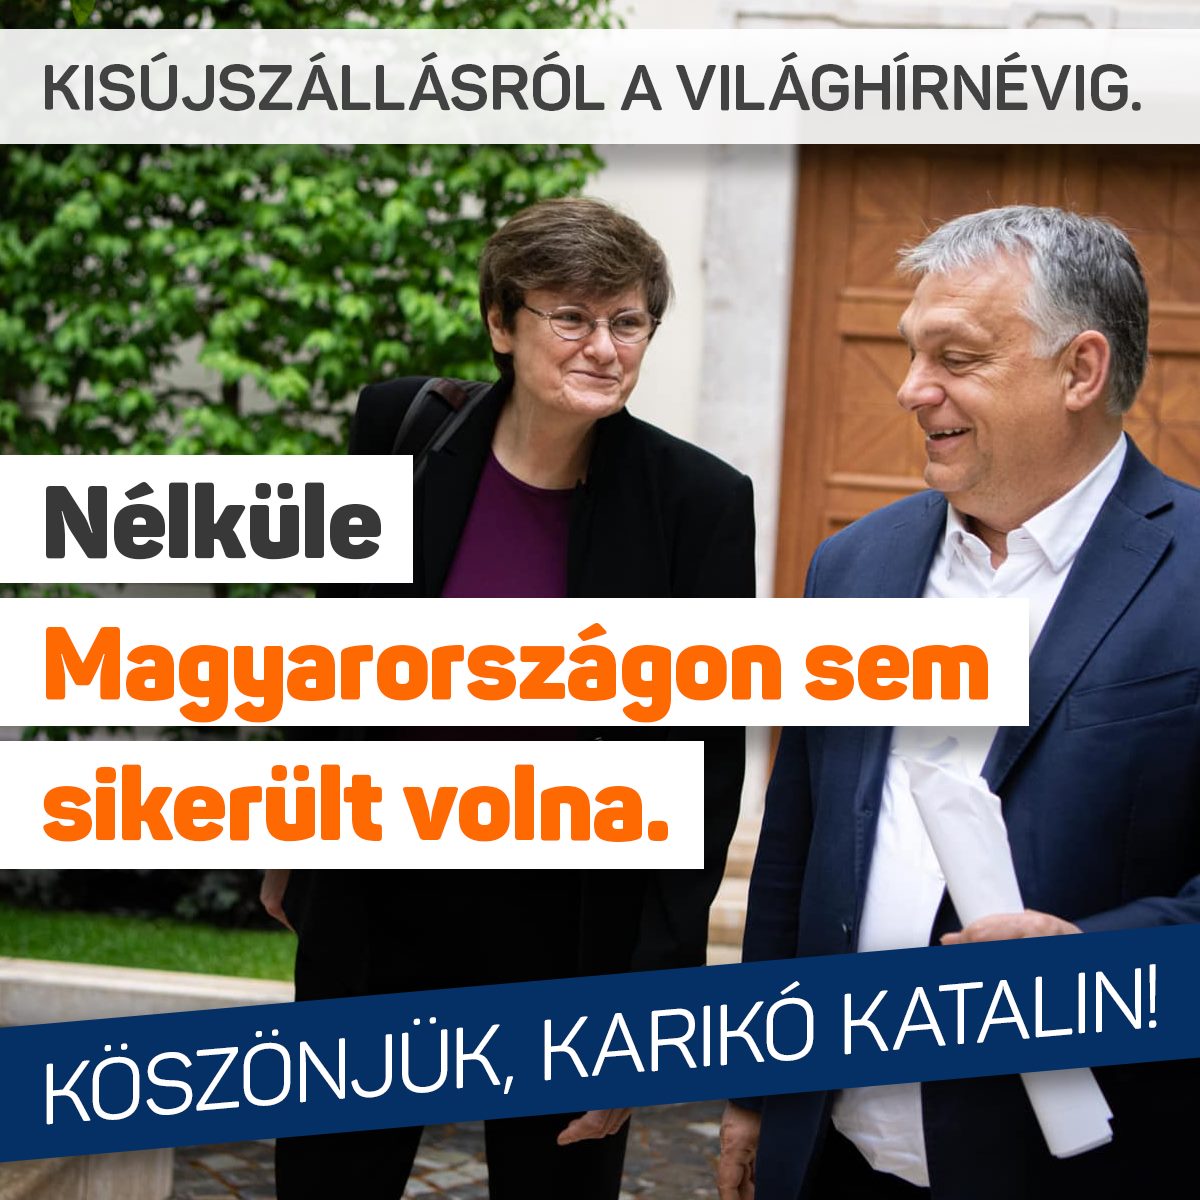 Orbán Viktor – Nélküle Magyarországon sem sikerült volna. Köszönjük, Karikó Katalin!